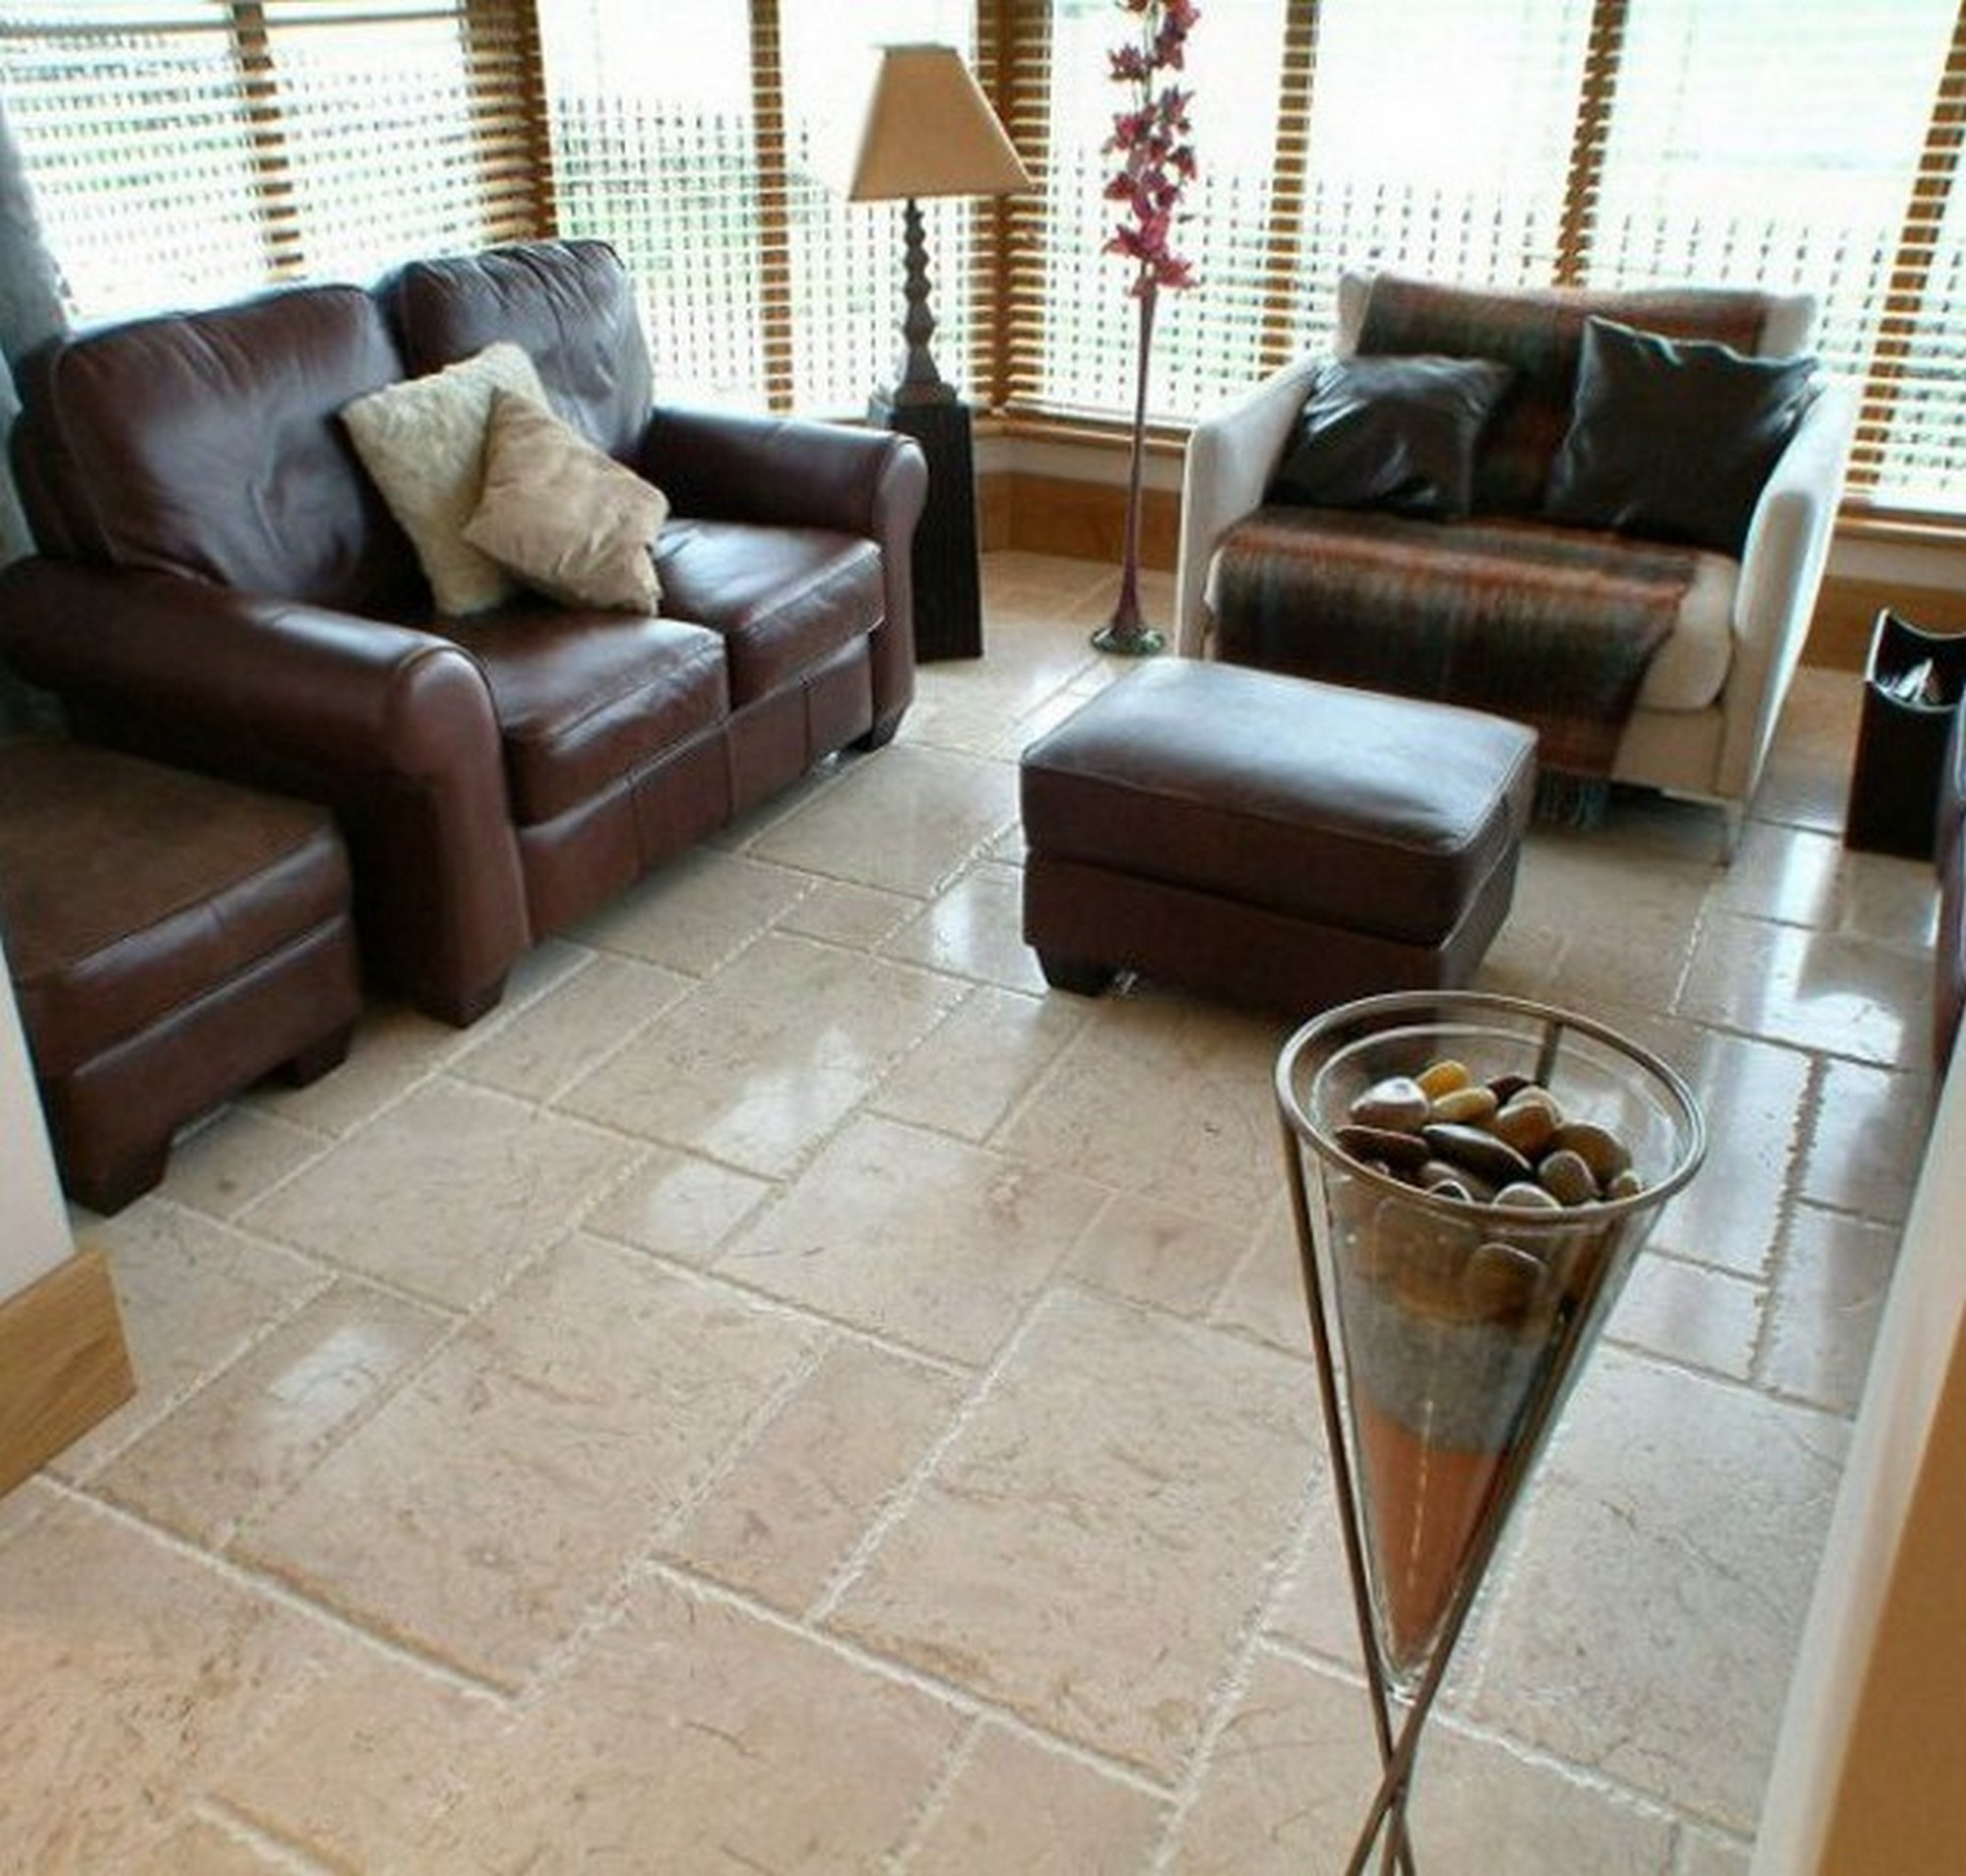 10 Fantastic Tile Floor Ideas For Living Room tile flooring ideas for living room newsgr 2024